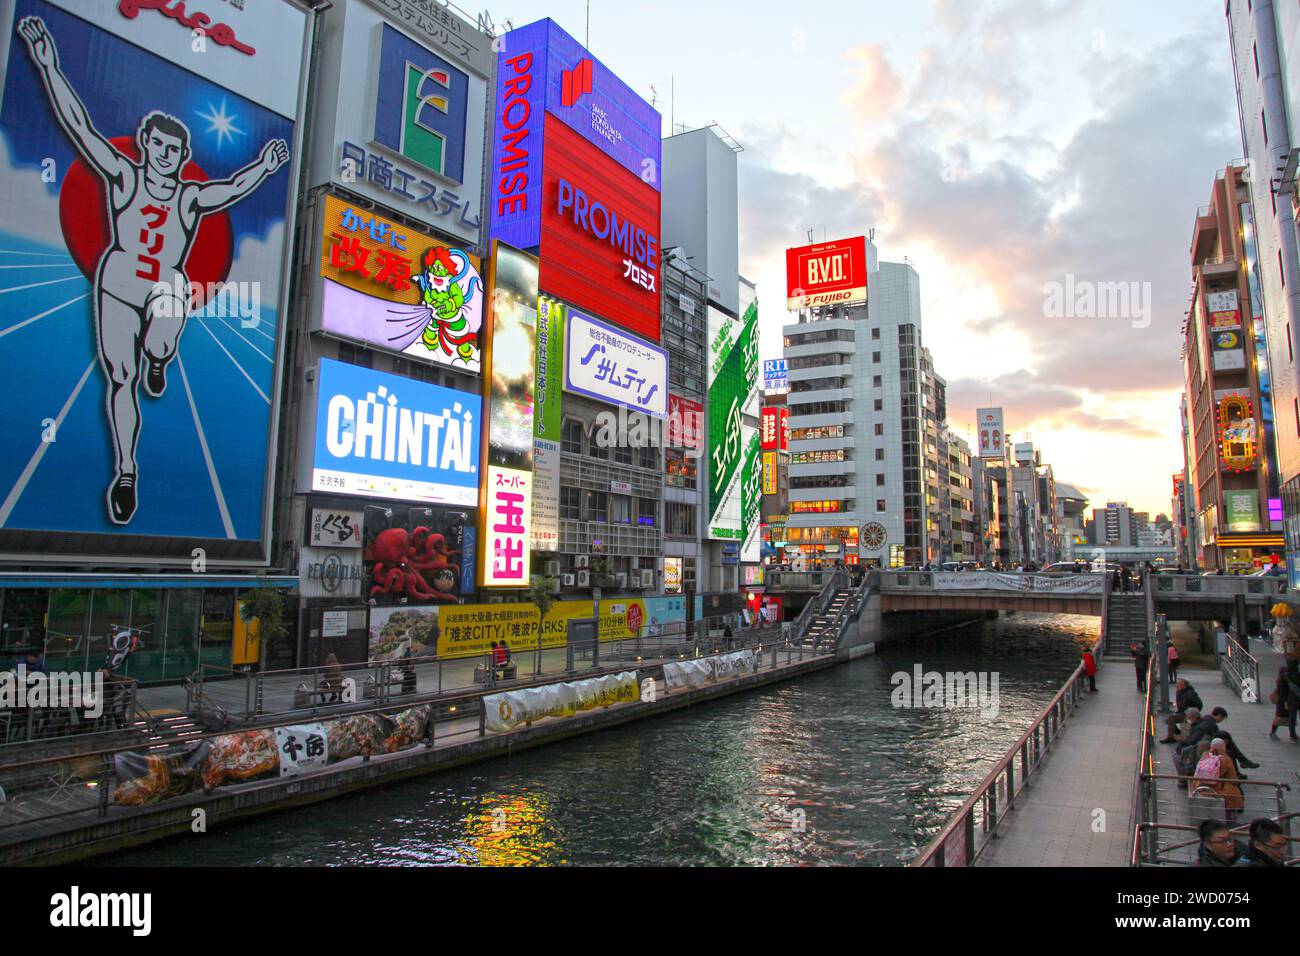 Dotonbori è la principale area turistica e notturna di Osaka, famosa per i suoi ristoranti, negozi, canali e cartelli al neon. Foto Stock